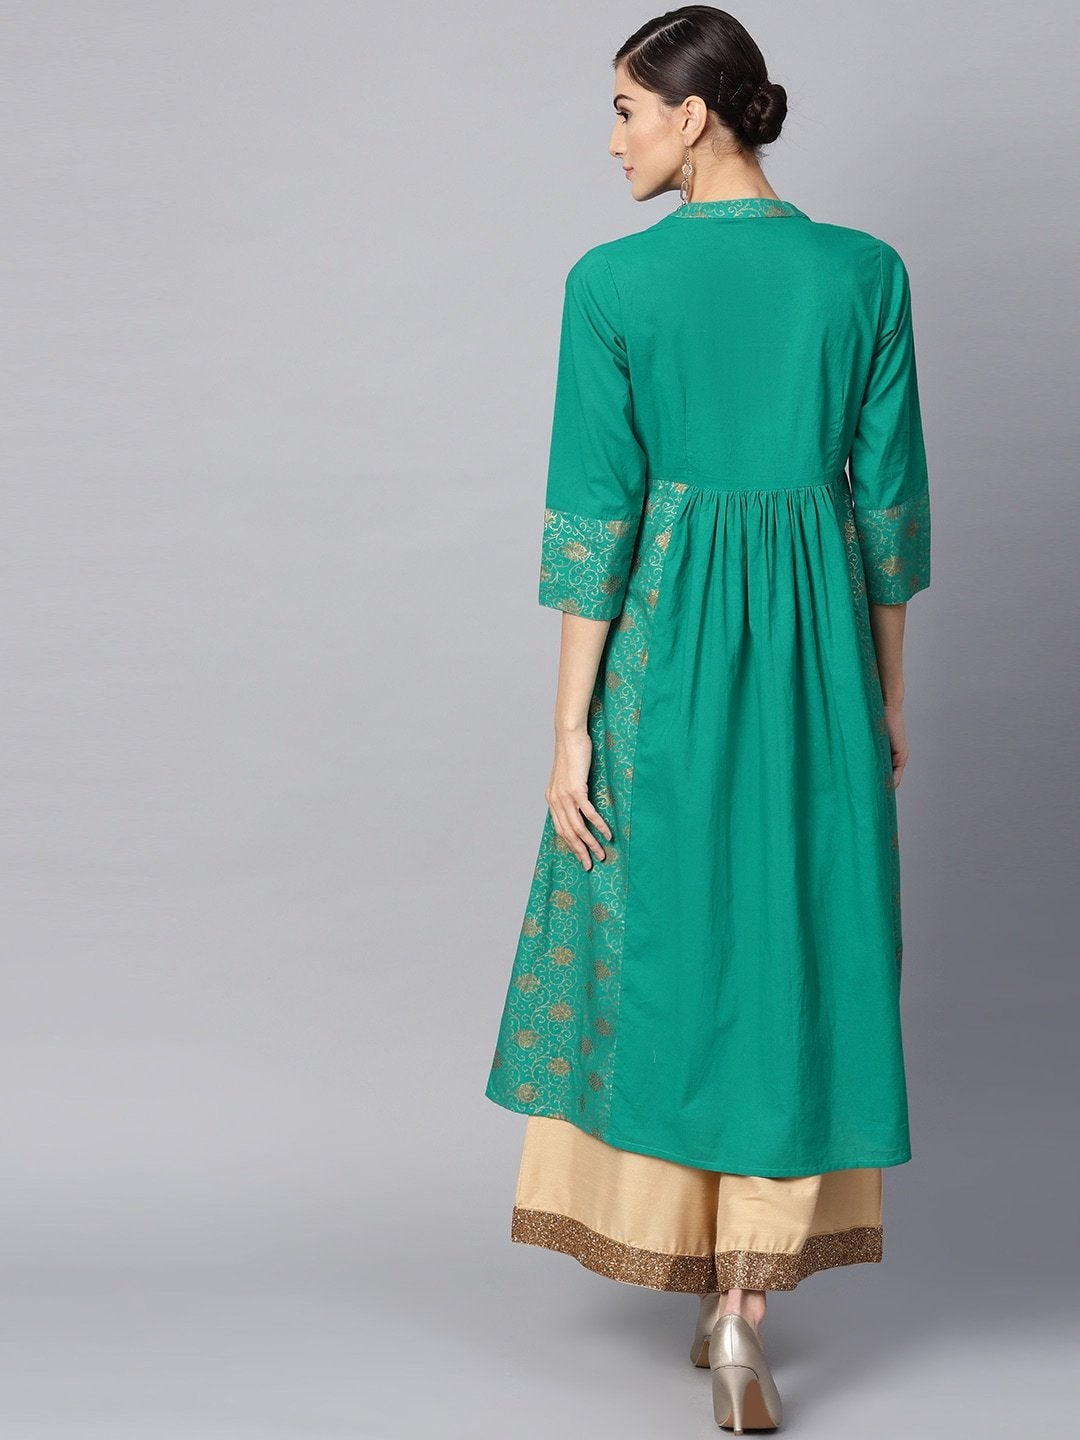 Women's Green & Golden Printed A-Line Kurta - Meeranshi